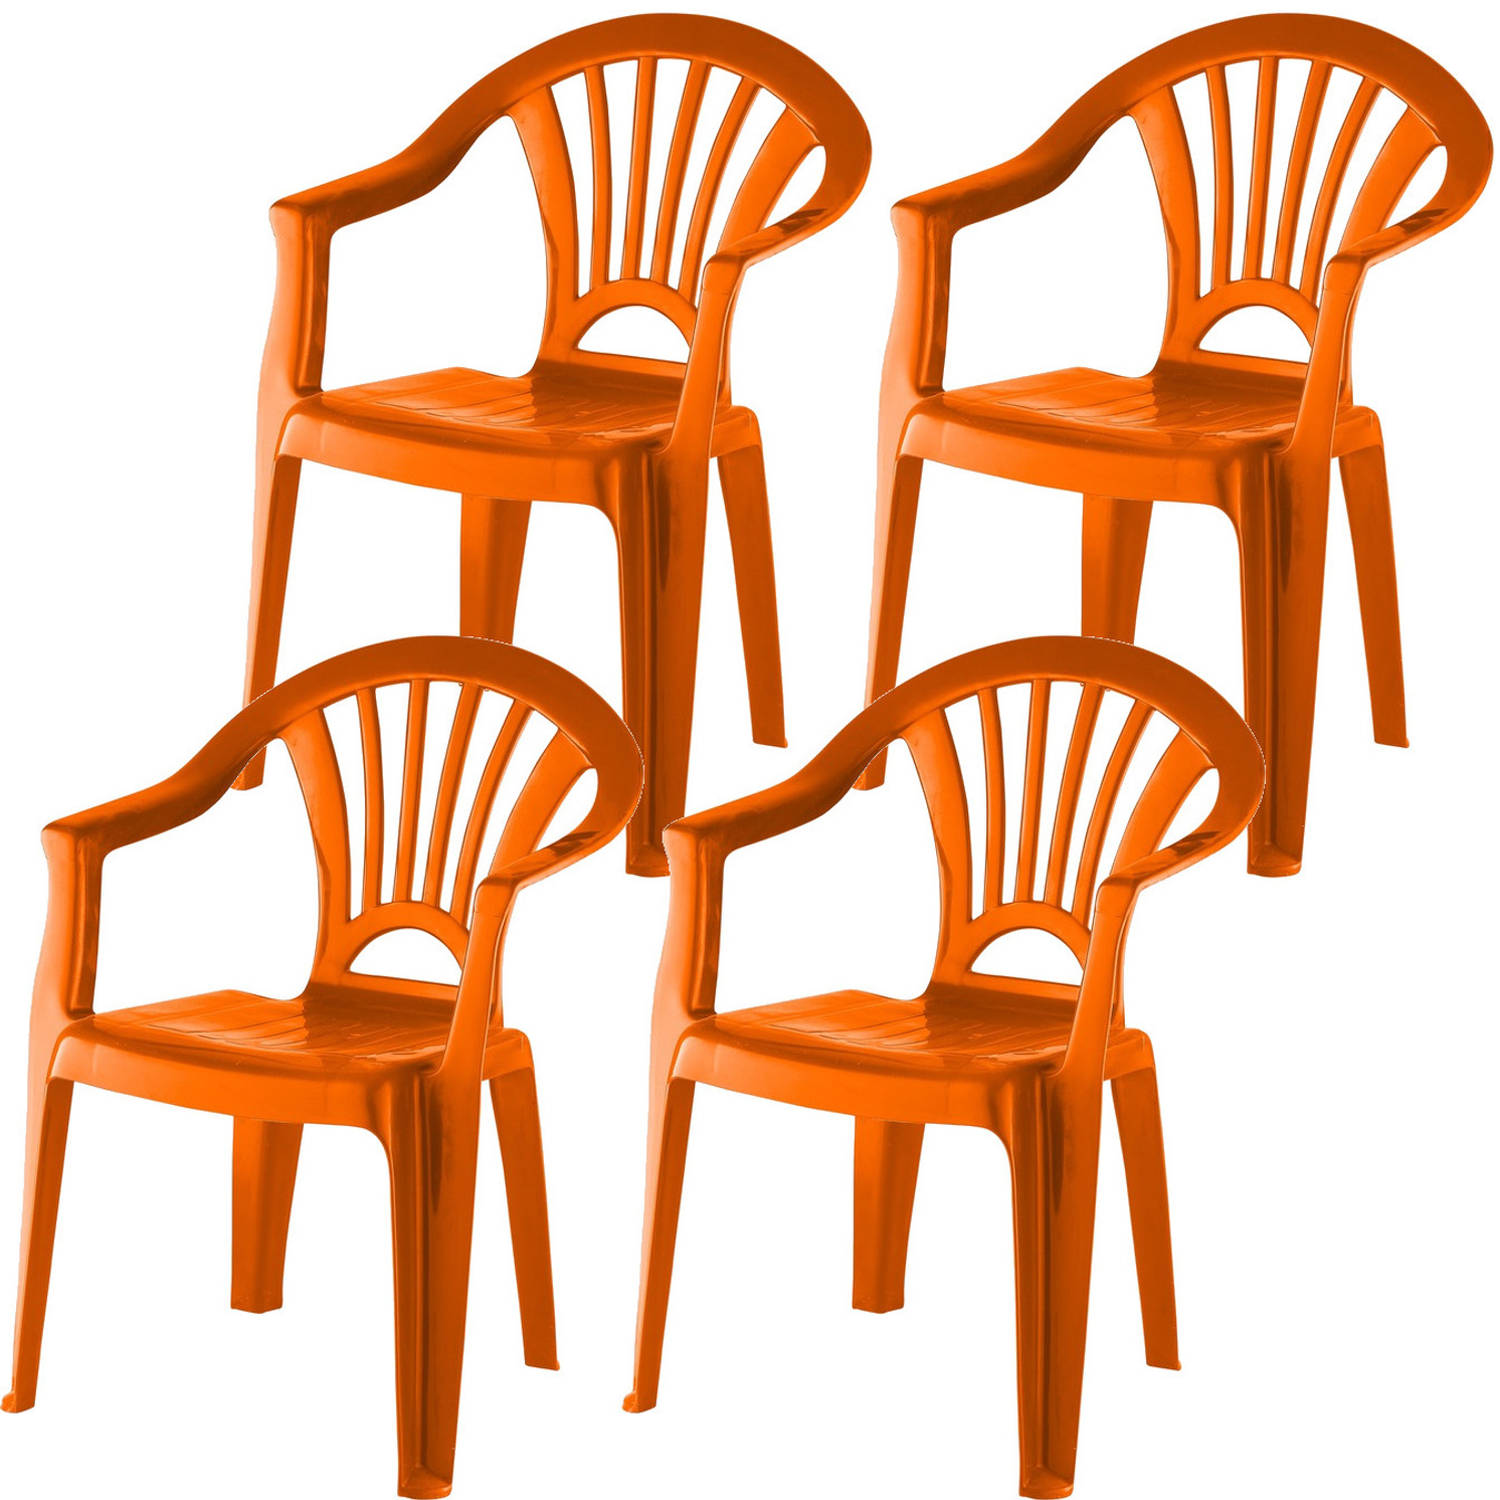 4x Stuks Oranje Stoeltjes Voor Kinderen 51 Cm Tuinmeubelen Kunststof Binnen-buitenstoelen Voor Kinde